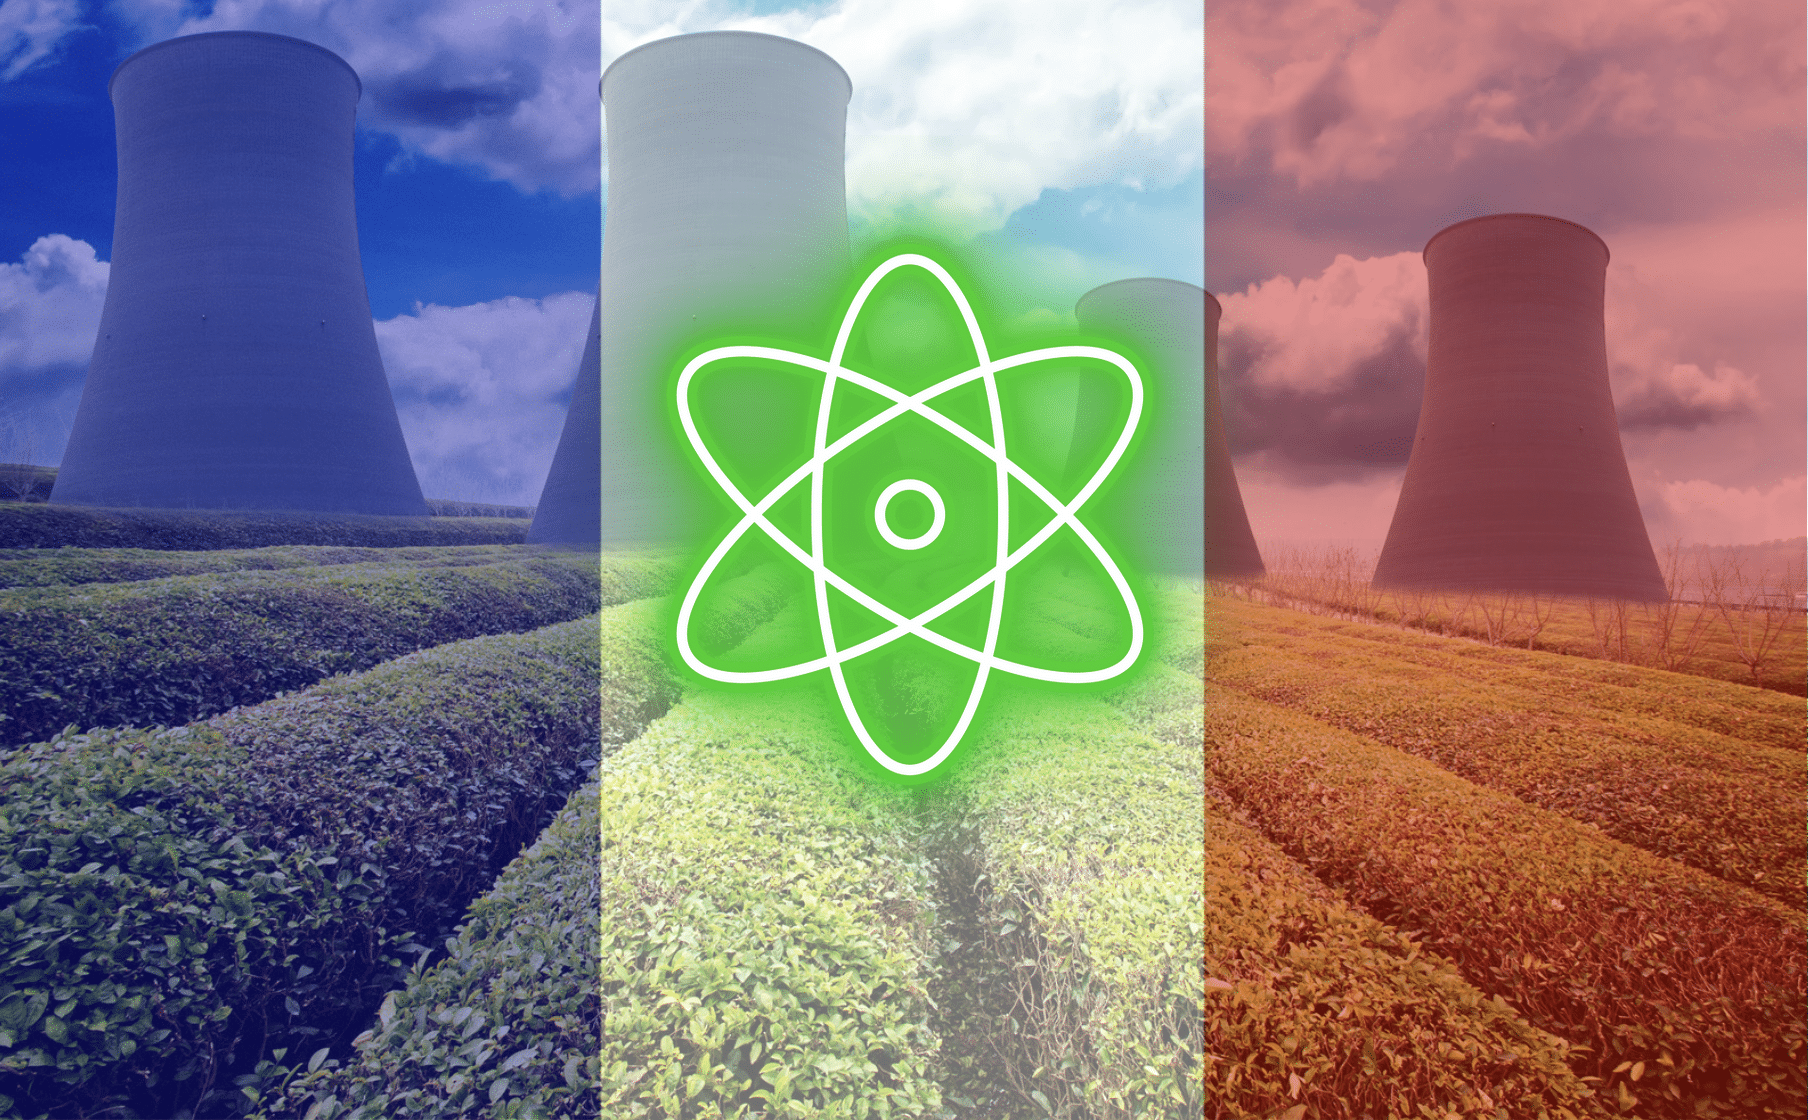 ADIMAS | Article L'indépendance nucléaire française menacée